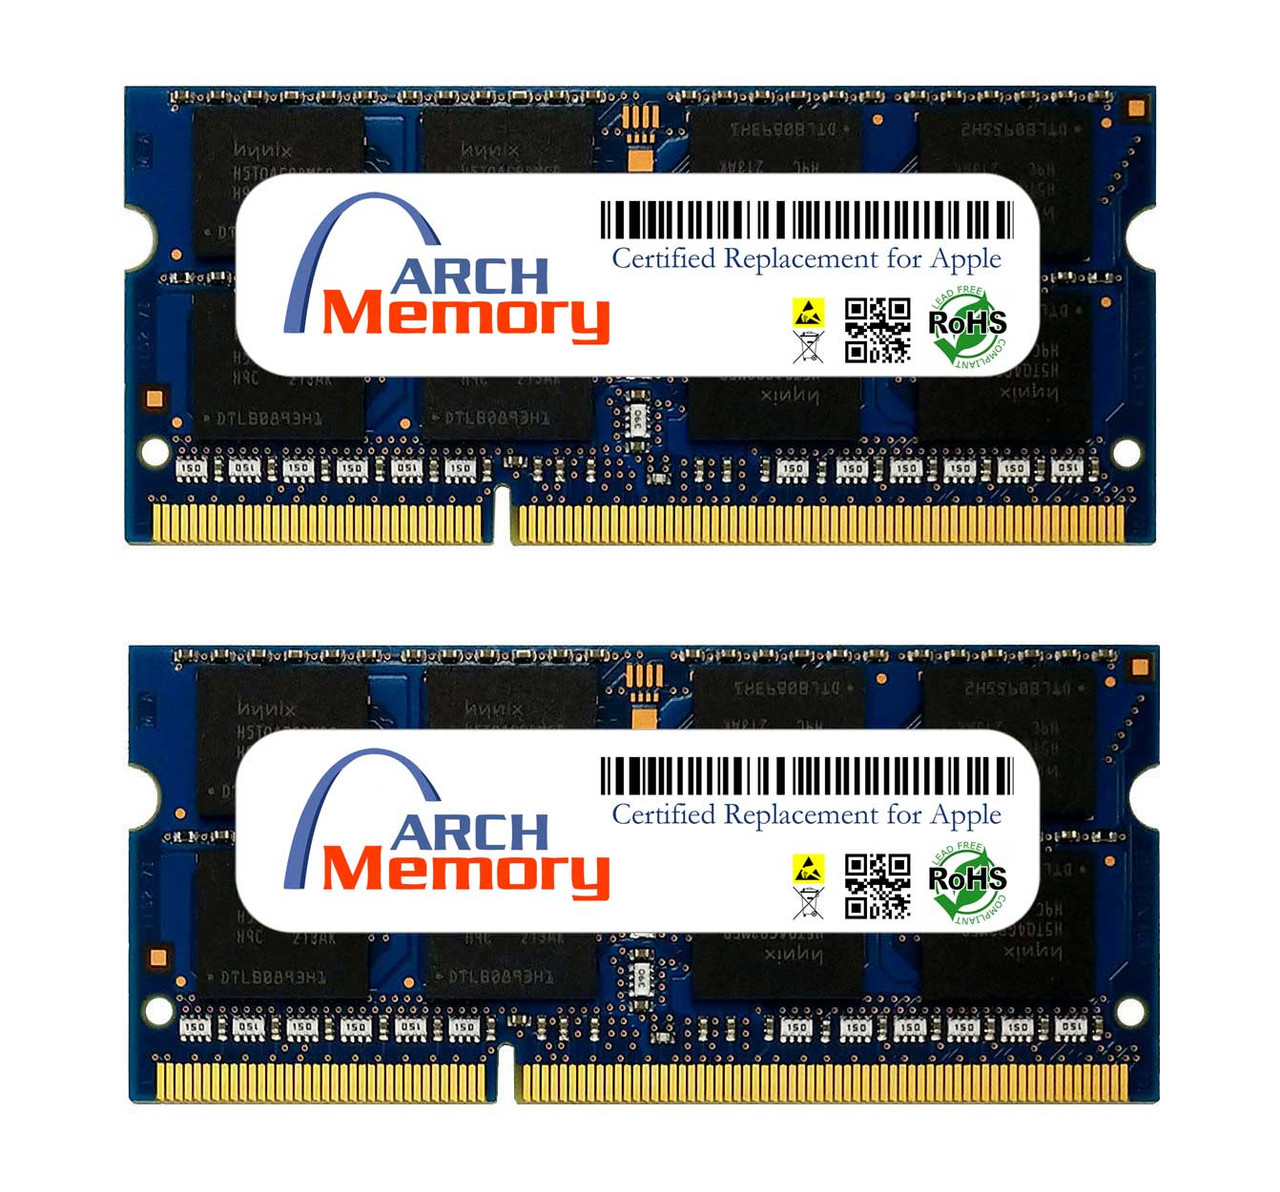 eBay*8GB MD019G/A (2 x 4GB) 204-Pin DDR3-1333 PC3-10600 So-dimm RAM